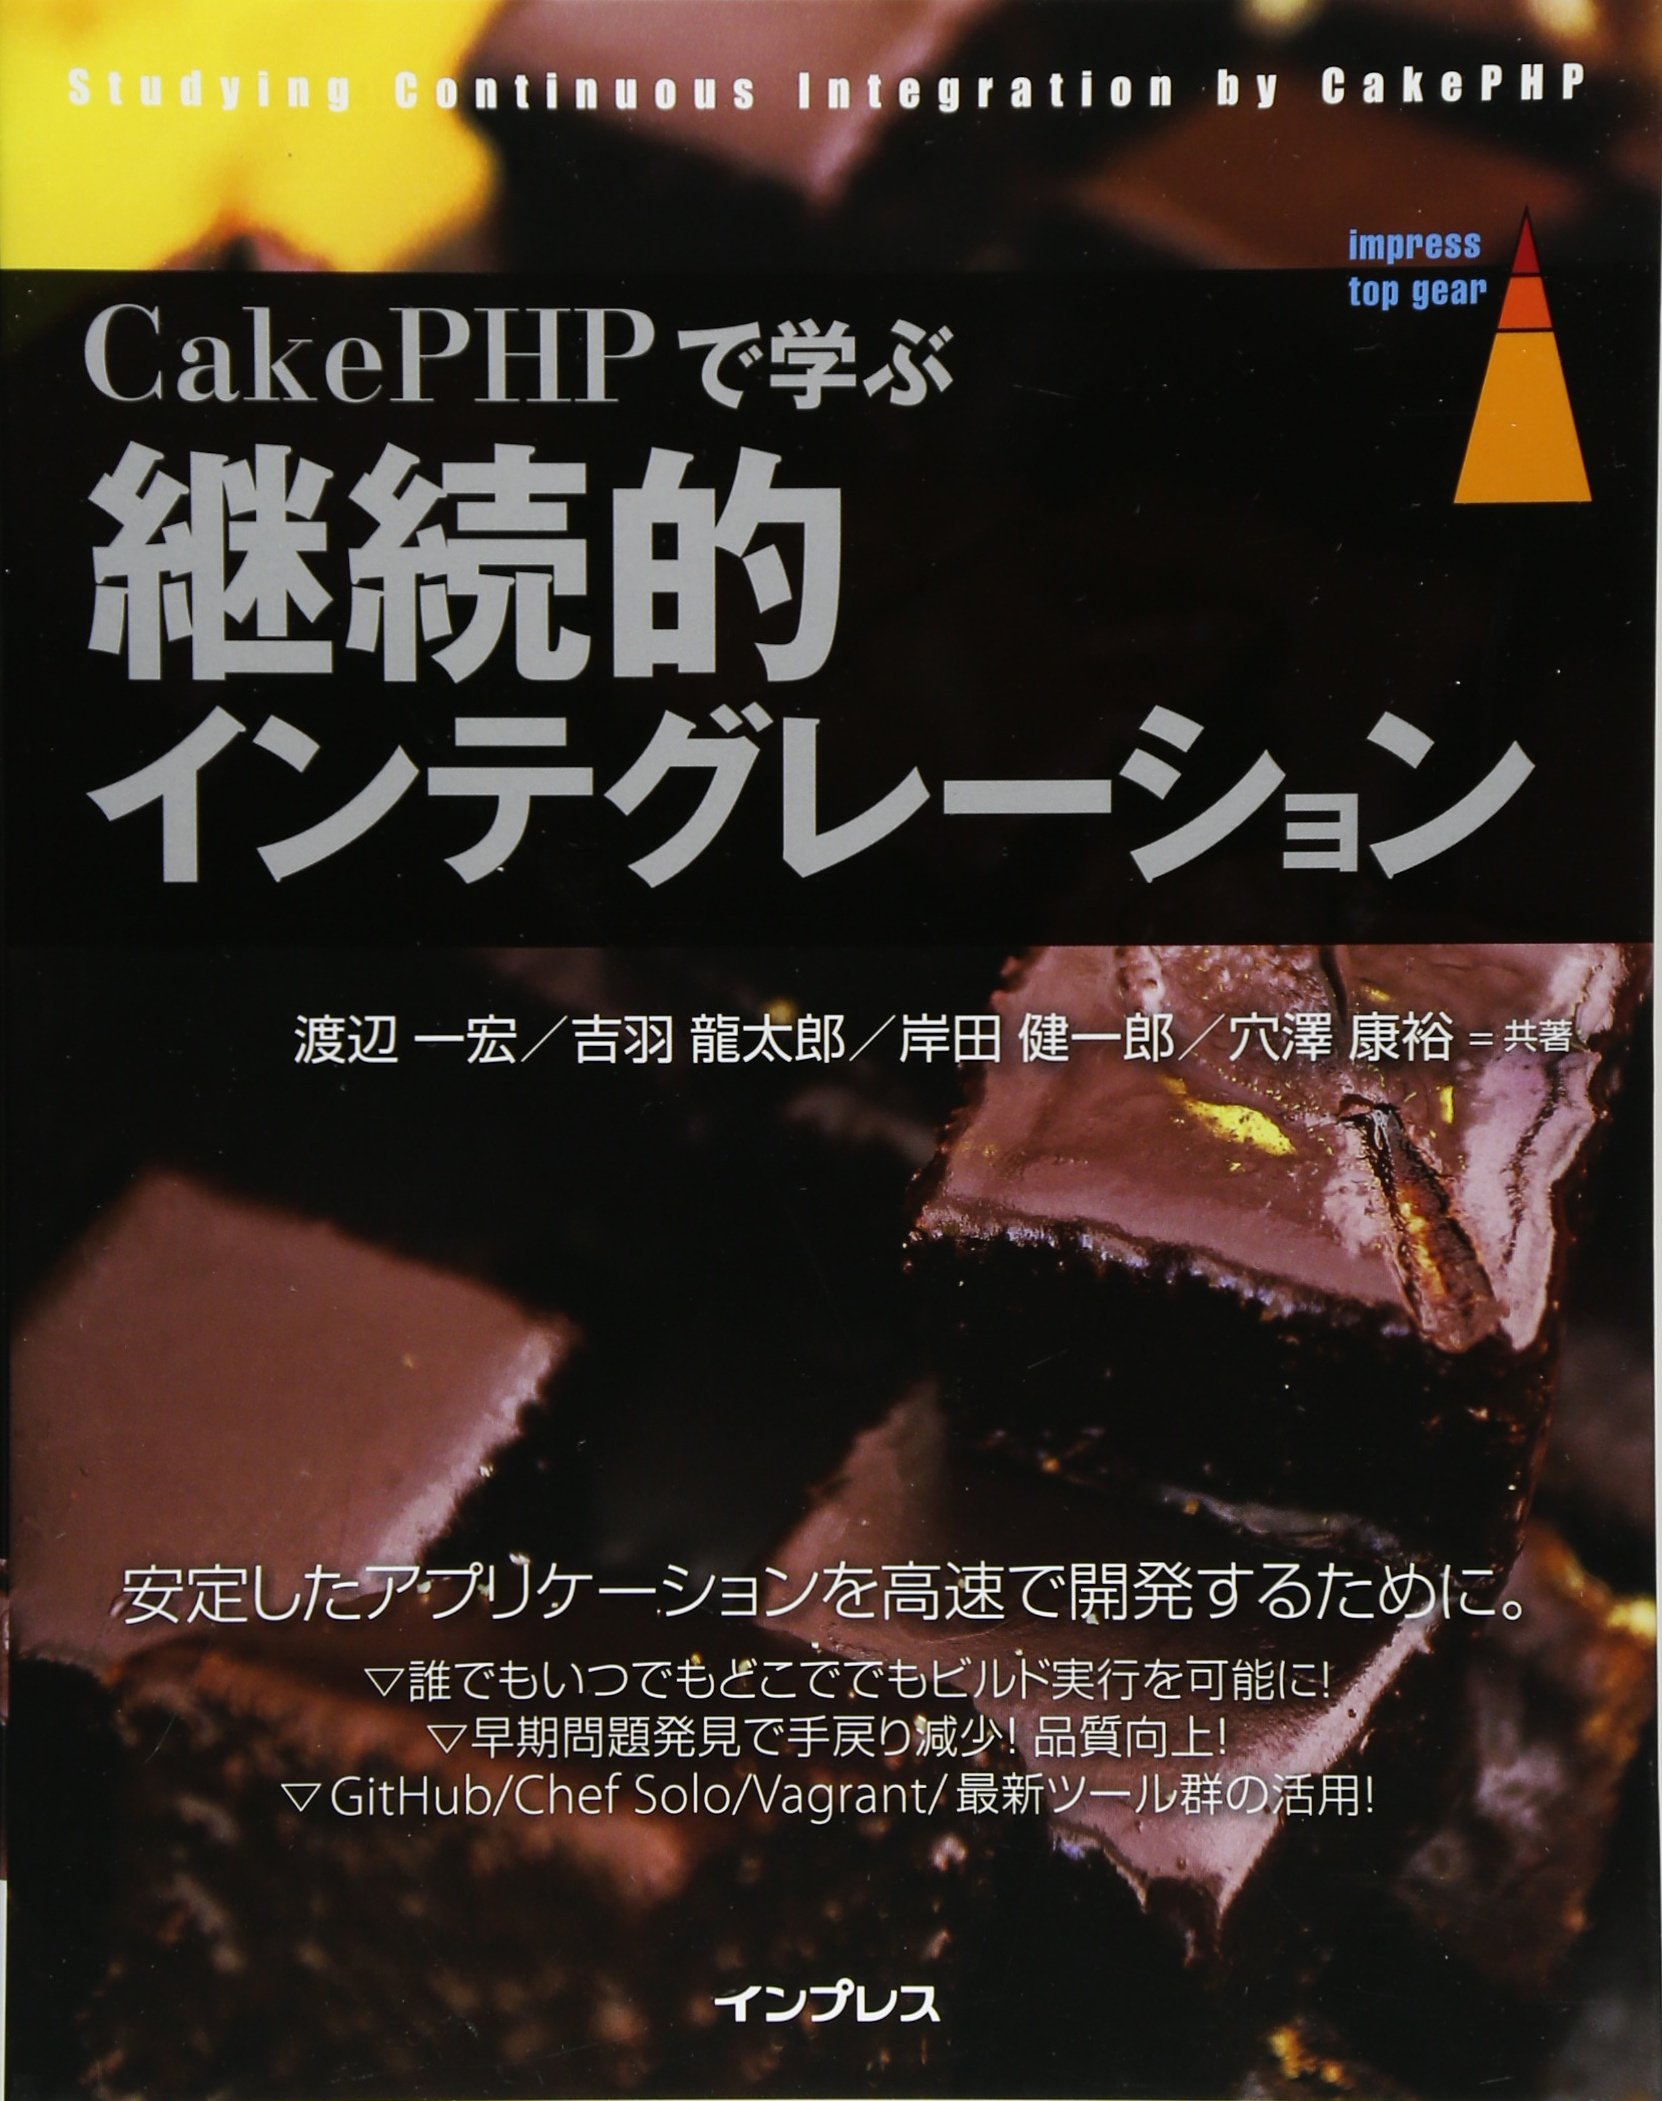 CakePHPで学ぶ継続的インテグレーション